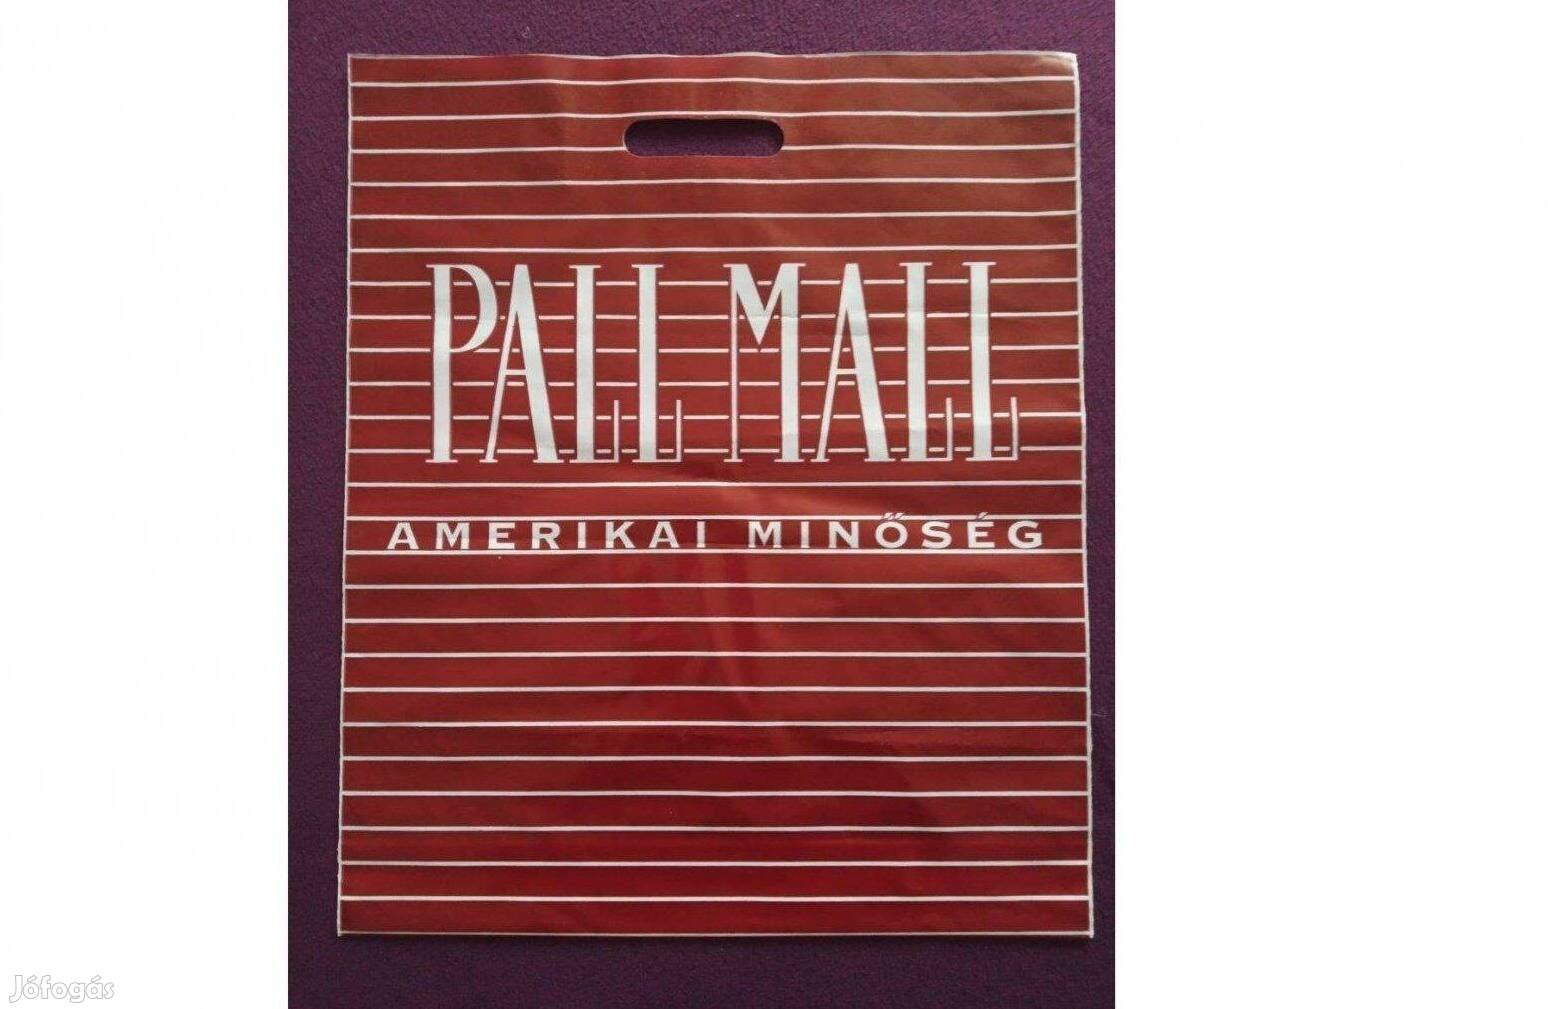 Pall Mall szatyor a 90-es évekből